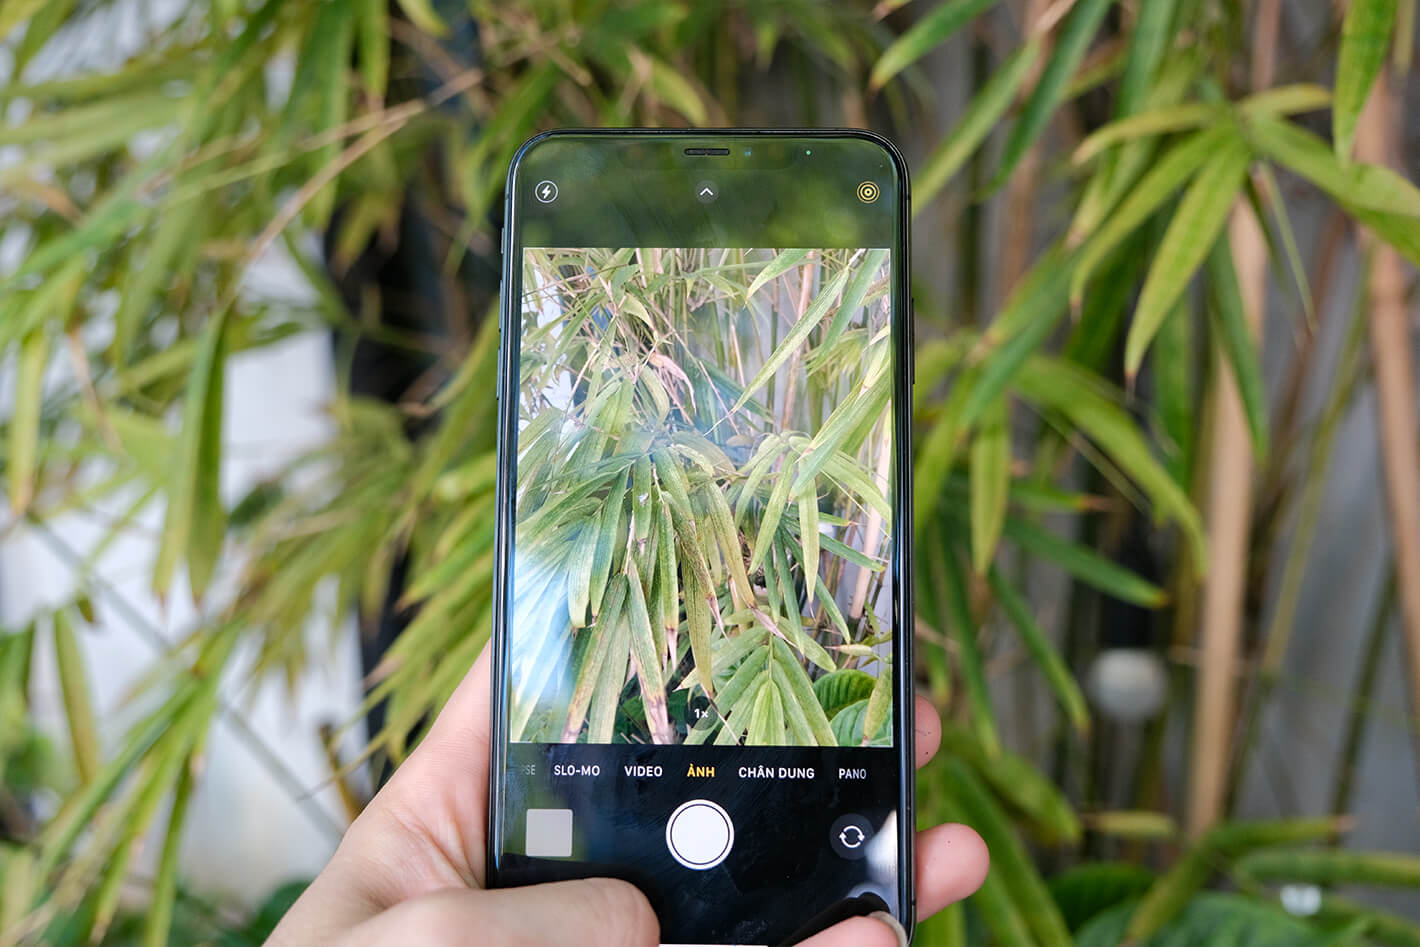 camera iPhone X 64GB chân thực, sắc nét đến từng chi tiết